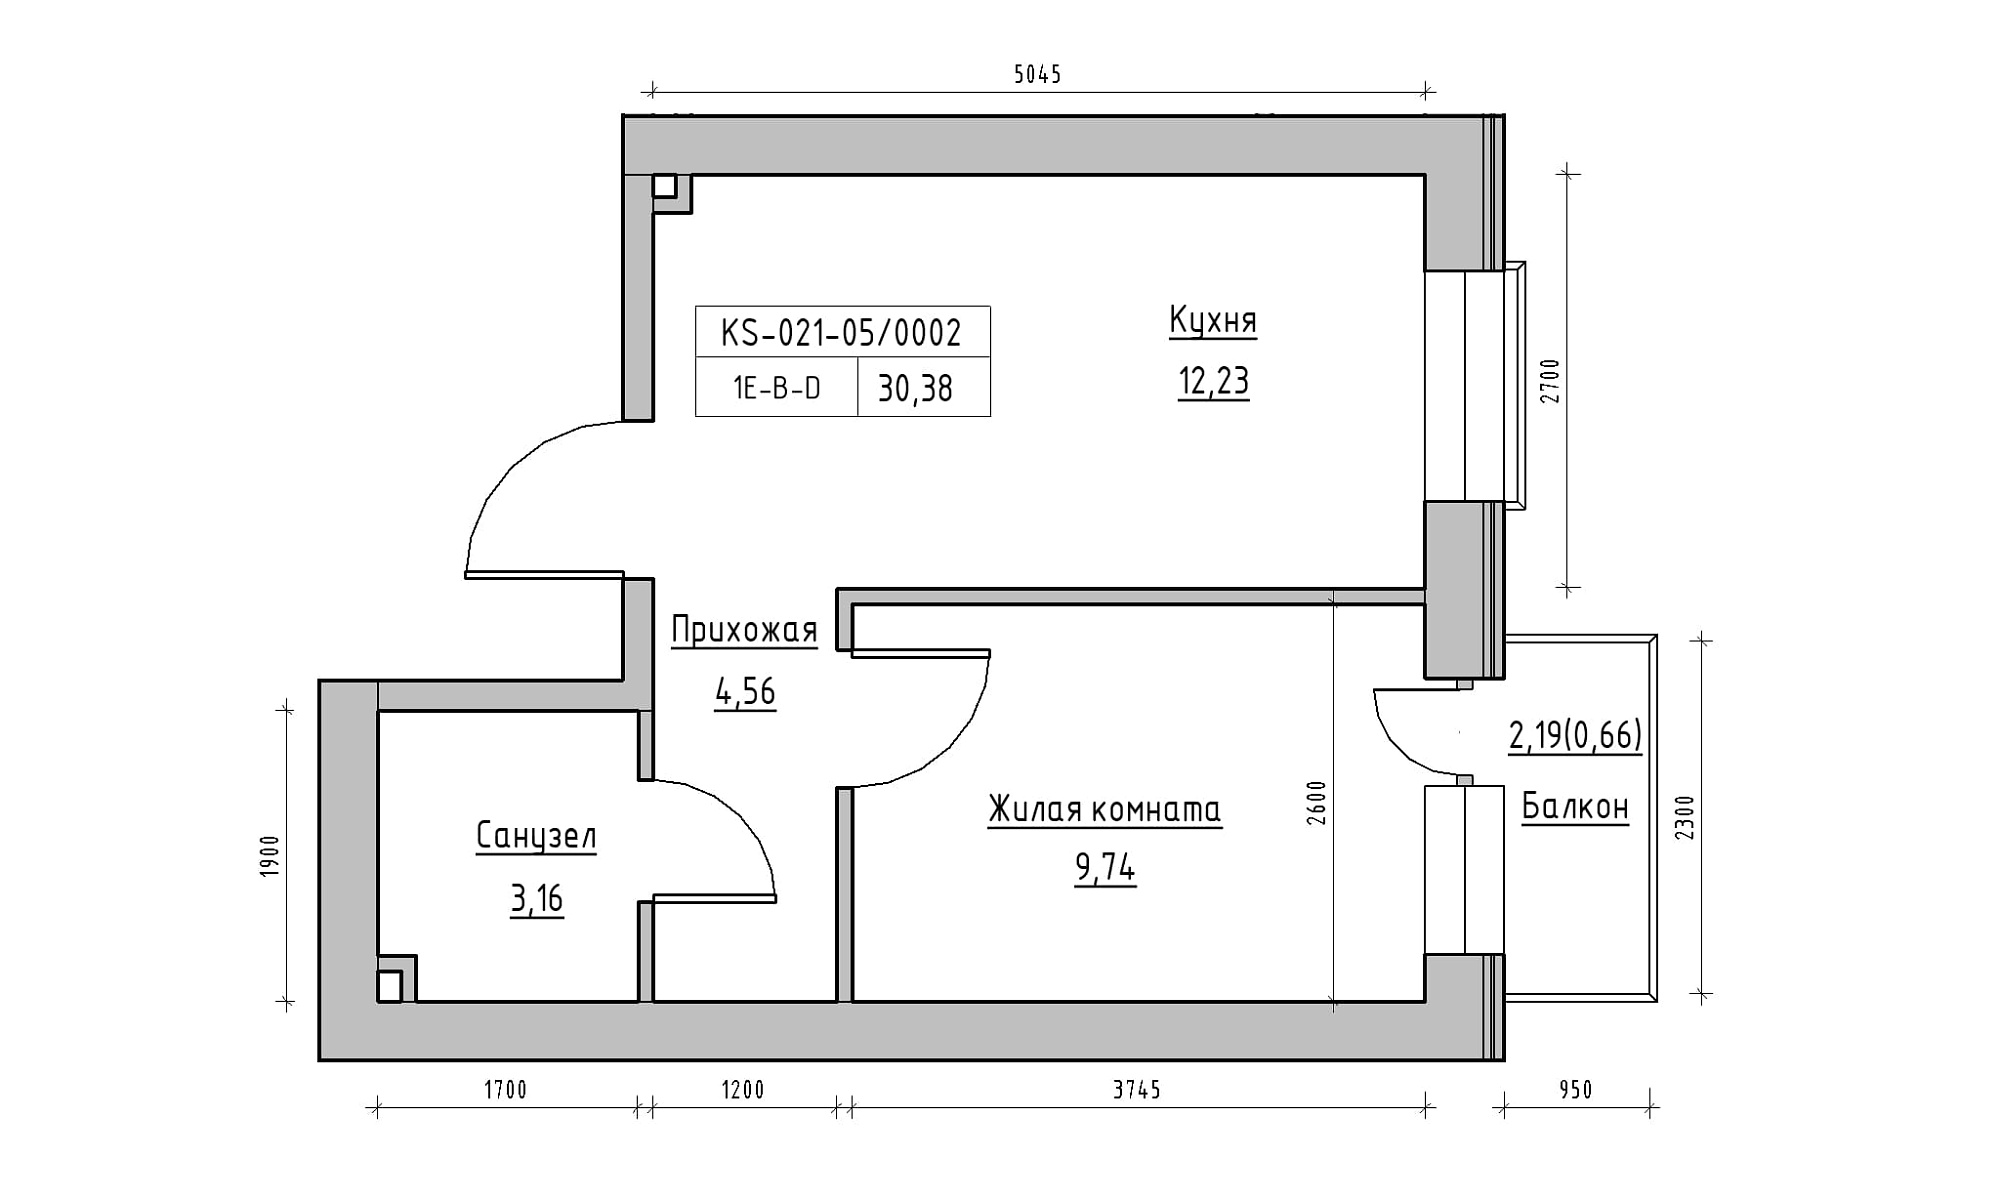 Планування 1-к квартира площею 30.38м2, KS-021-05/0002.